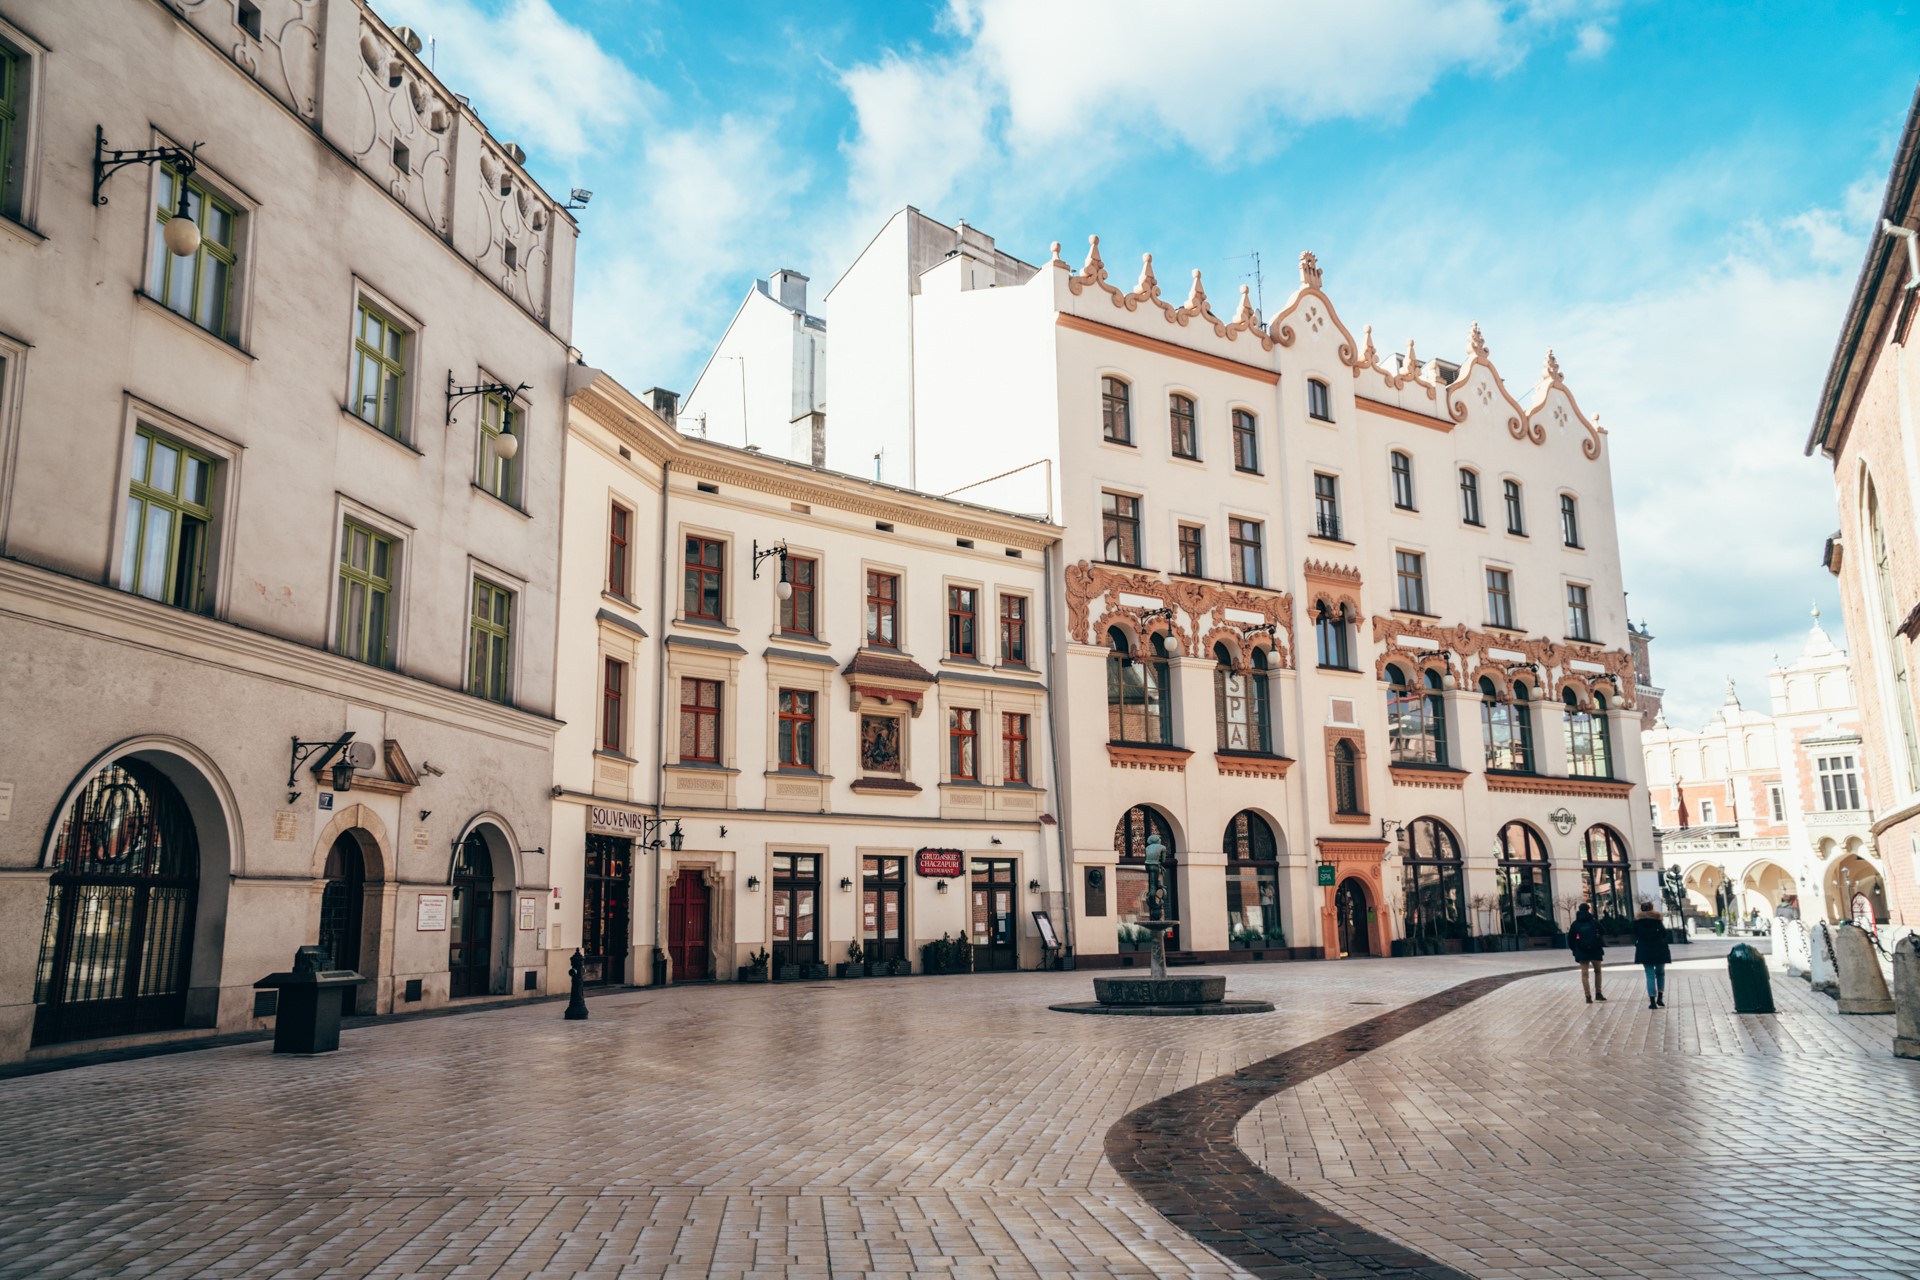 Jakie atrakcje zobaczyć na starym mieście w Krakowie